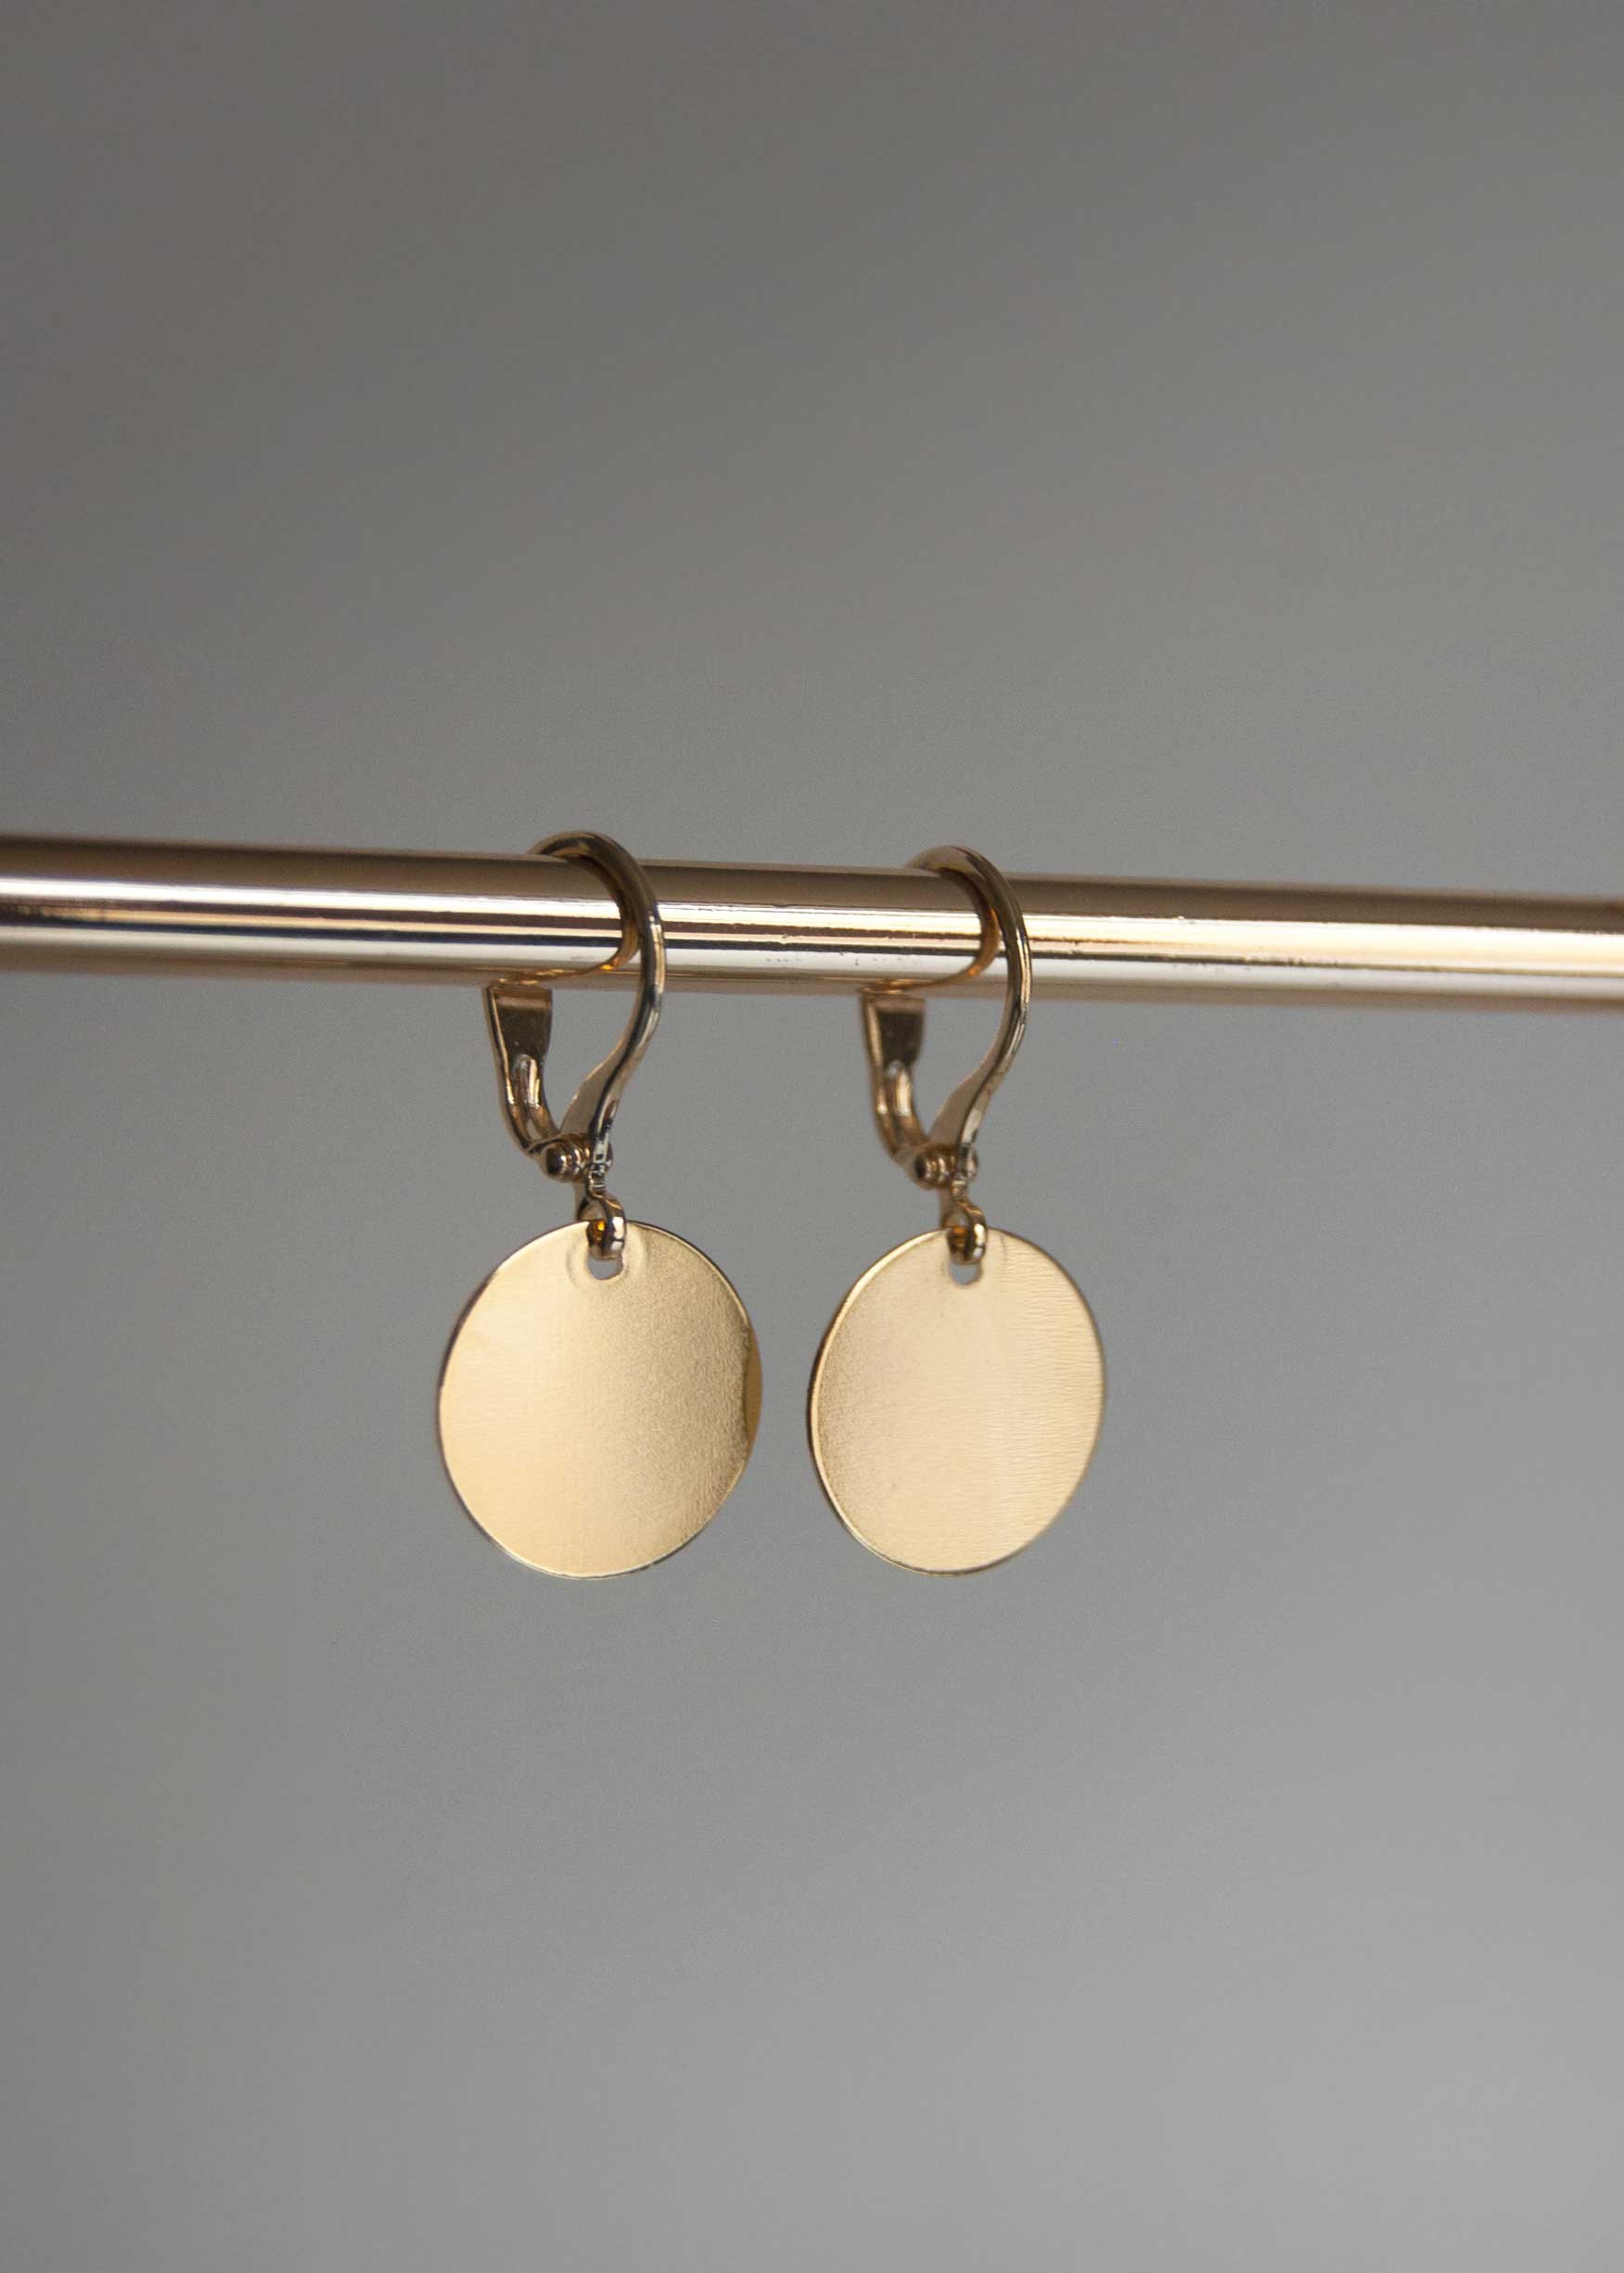 Gold Disc Earrings Medium, everyday earrings, simple gold earrings